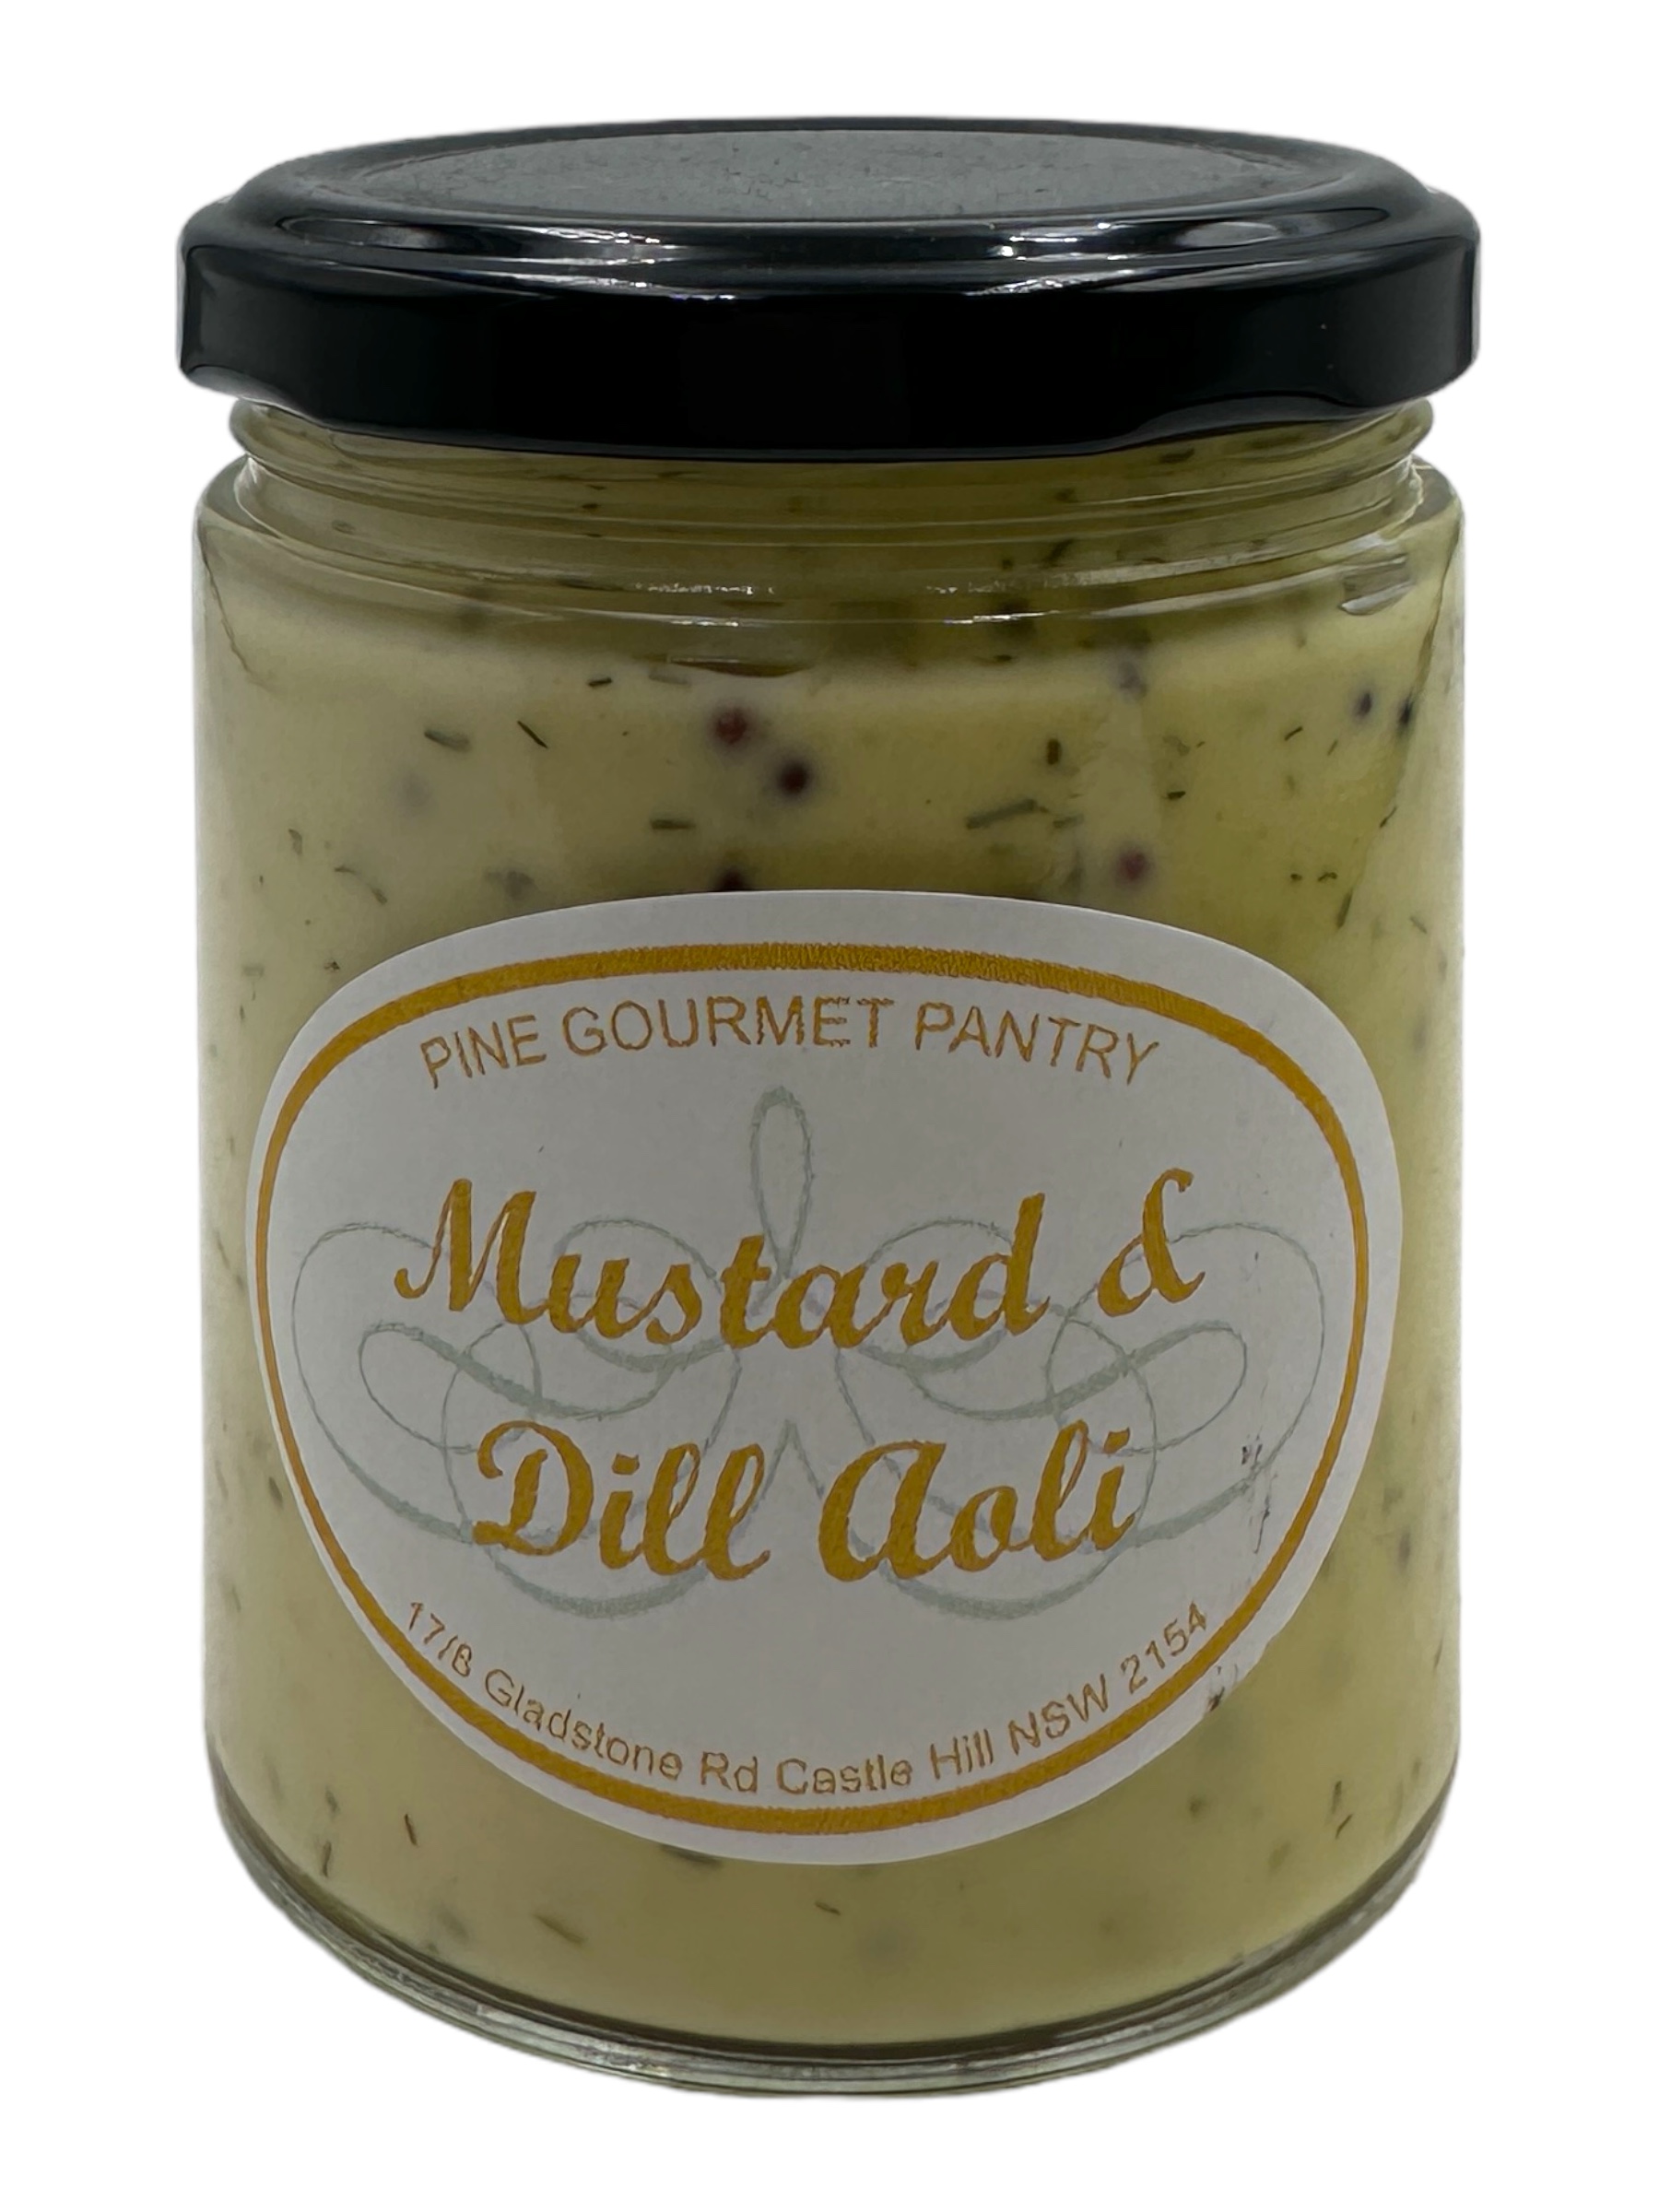 Mustard & Dill Aoli 